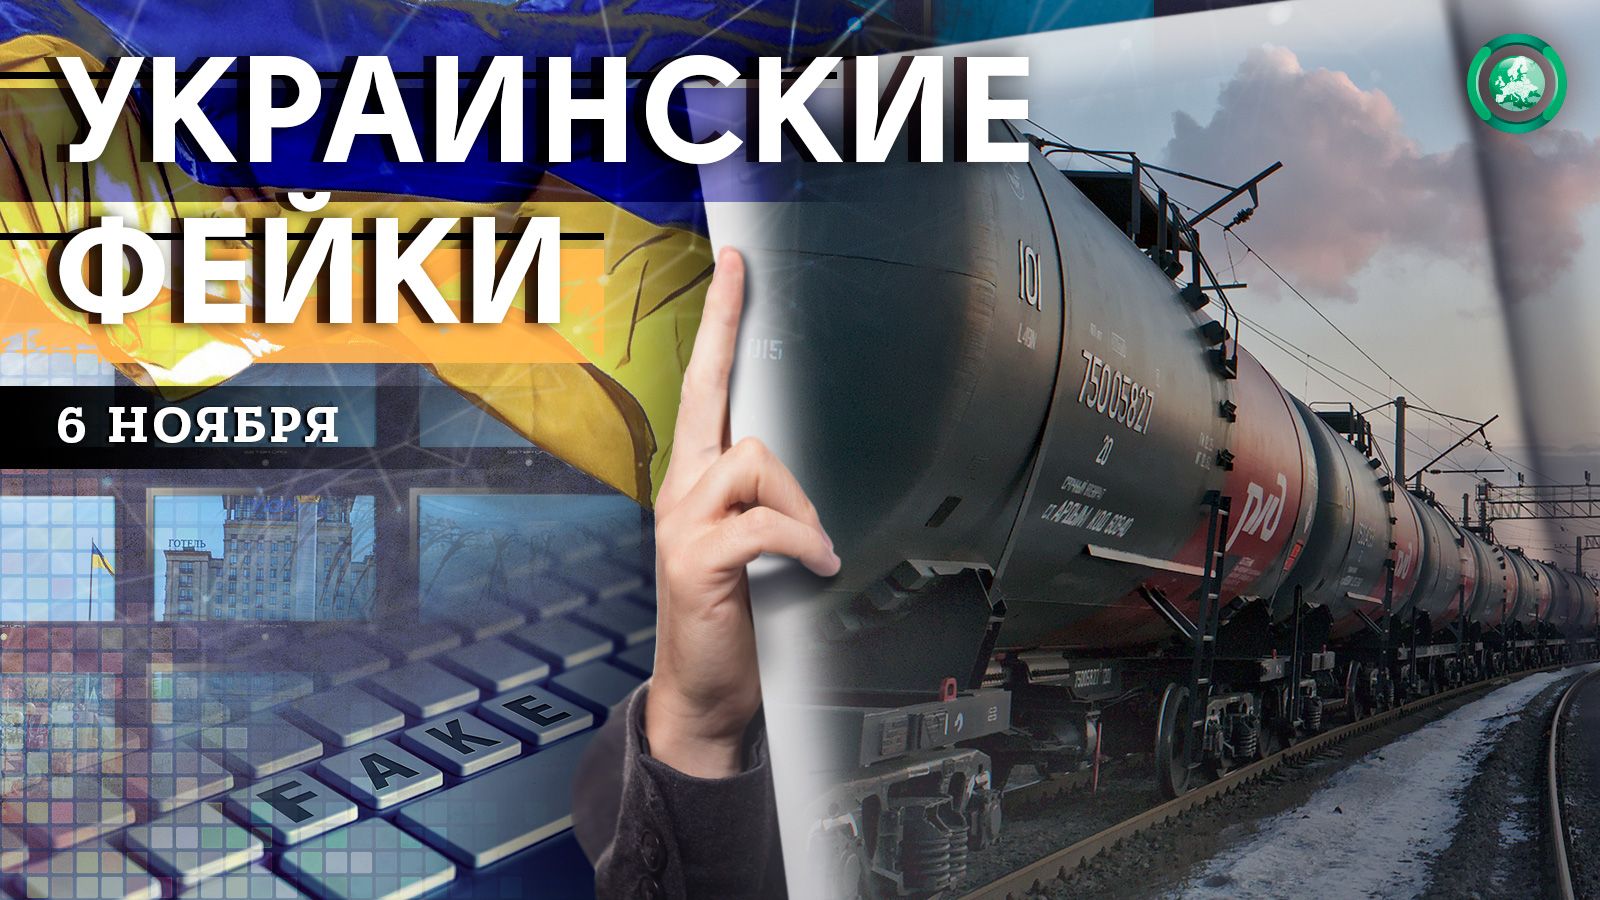 Подрыв поезда с горючим и непрофессионализм медиков — какие фейки распространили на Украине 6 ноября Весь мир